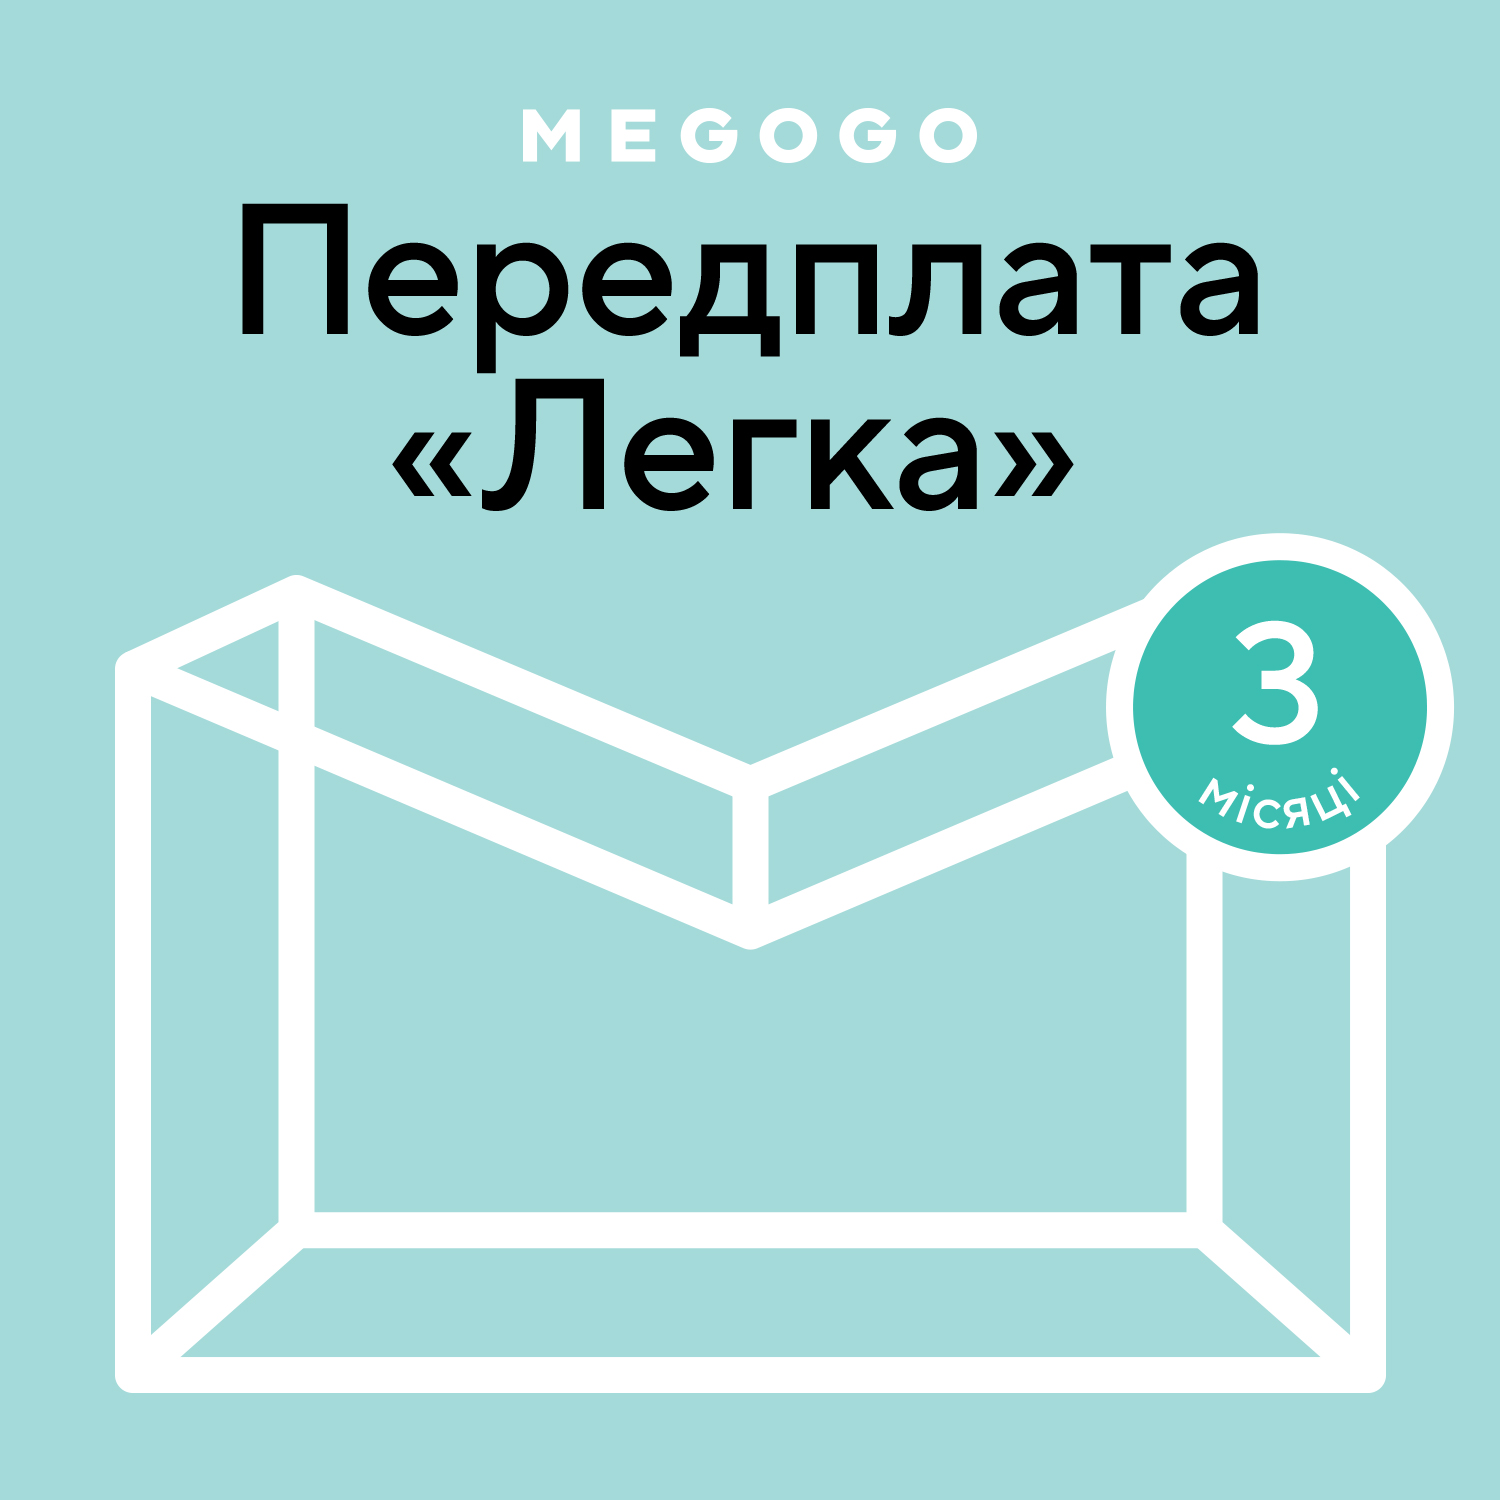 MEGOGO «Кино и ТВ: Легкая» 3 мес в Киеве